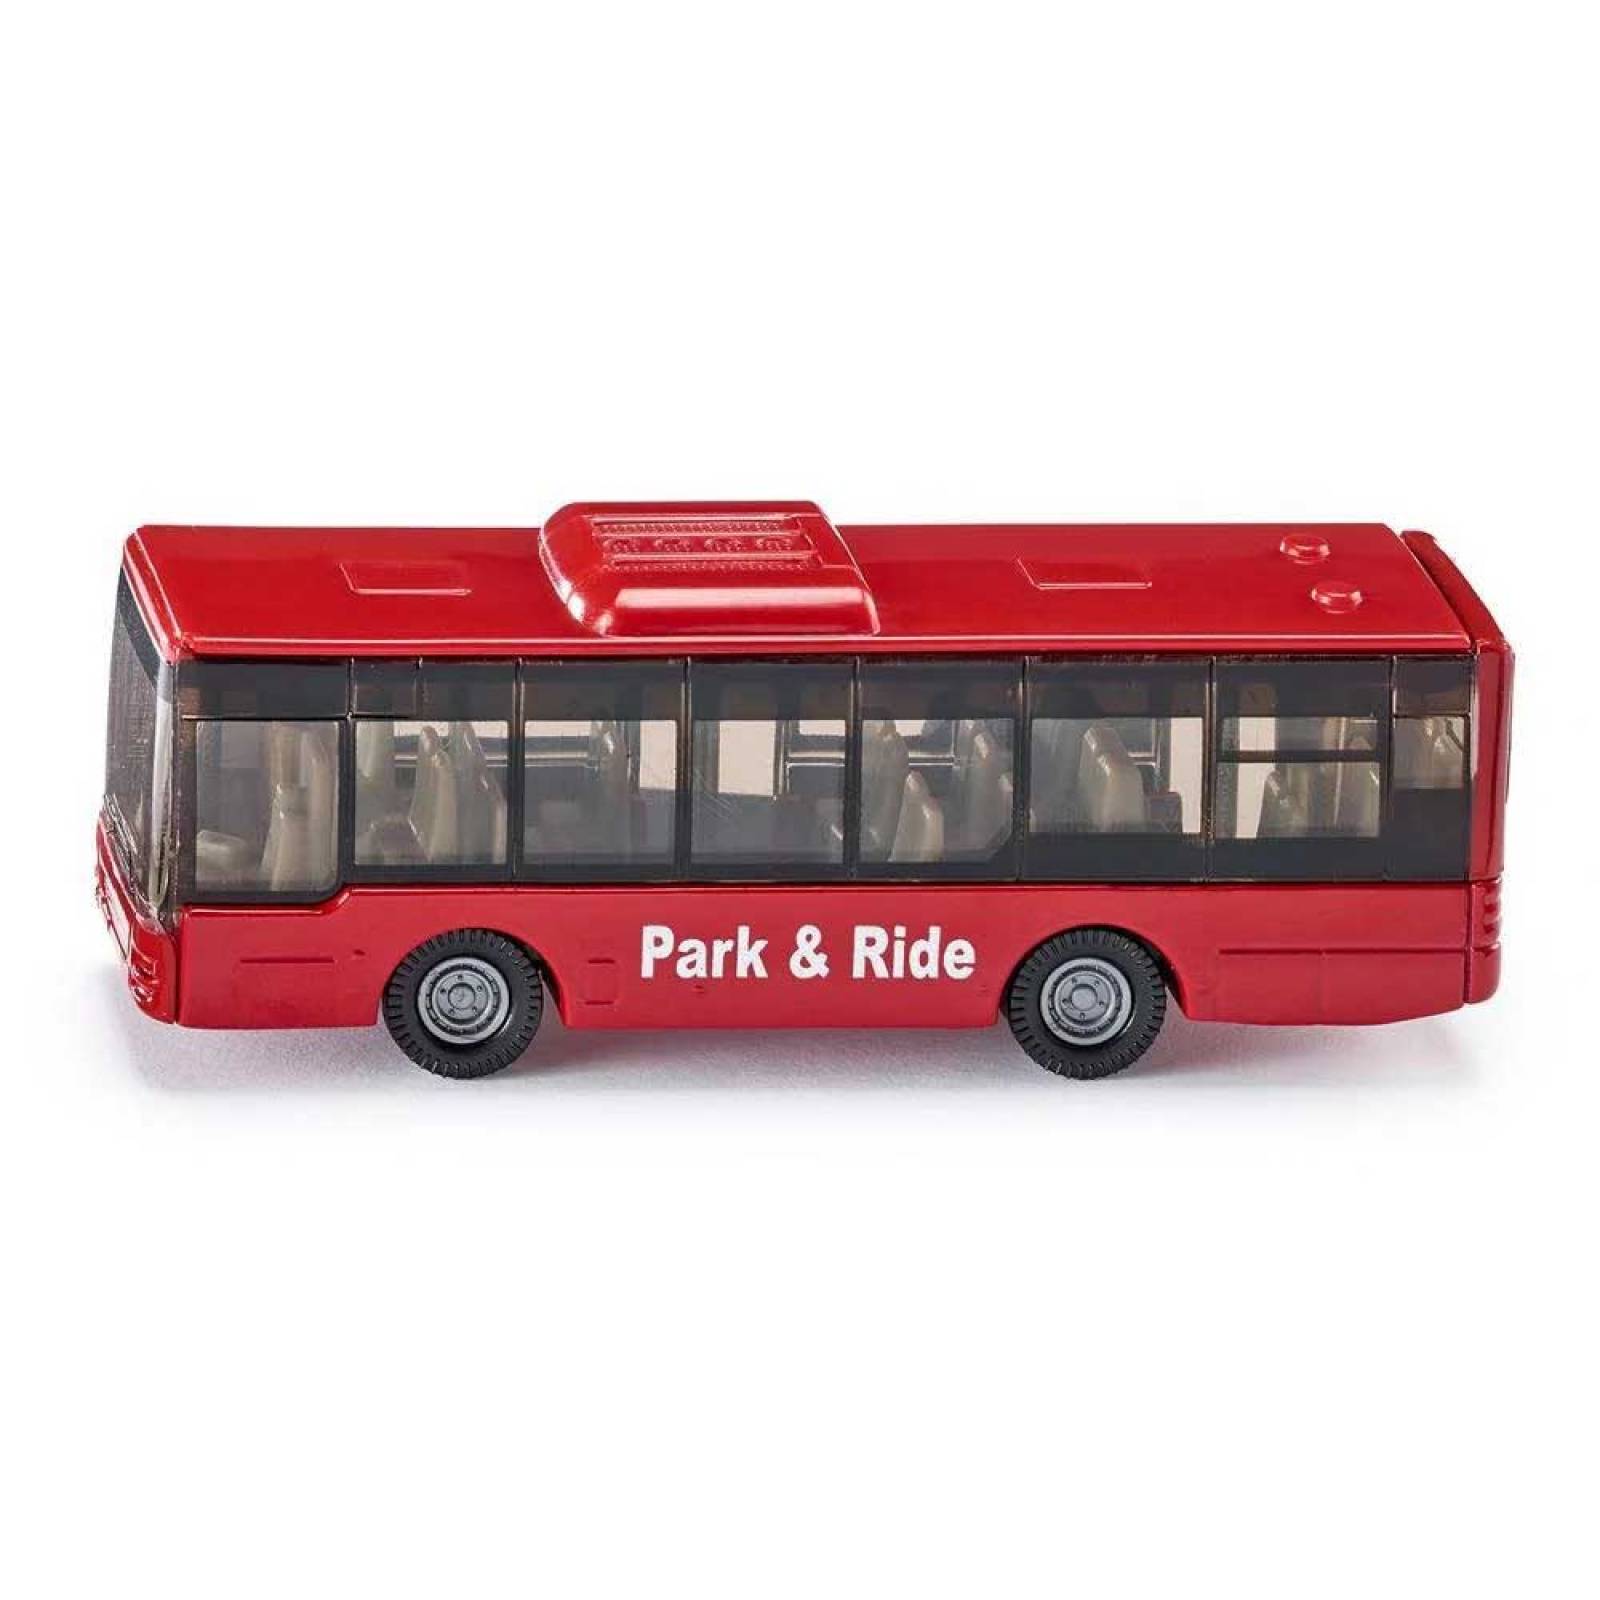 Park & Ride Bus - Single Die-Cast Toy Vehicle 1021 3+ thumbnails